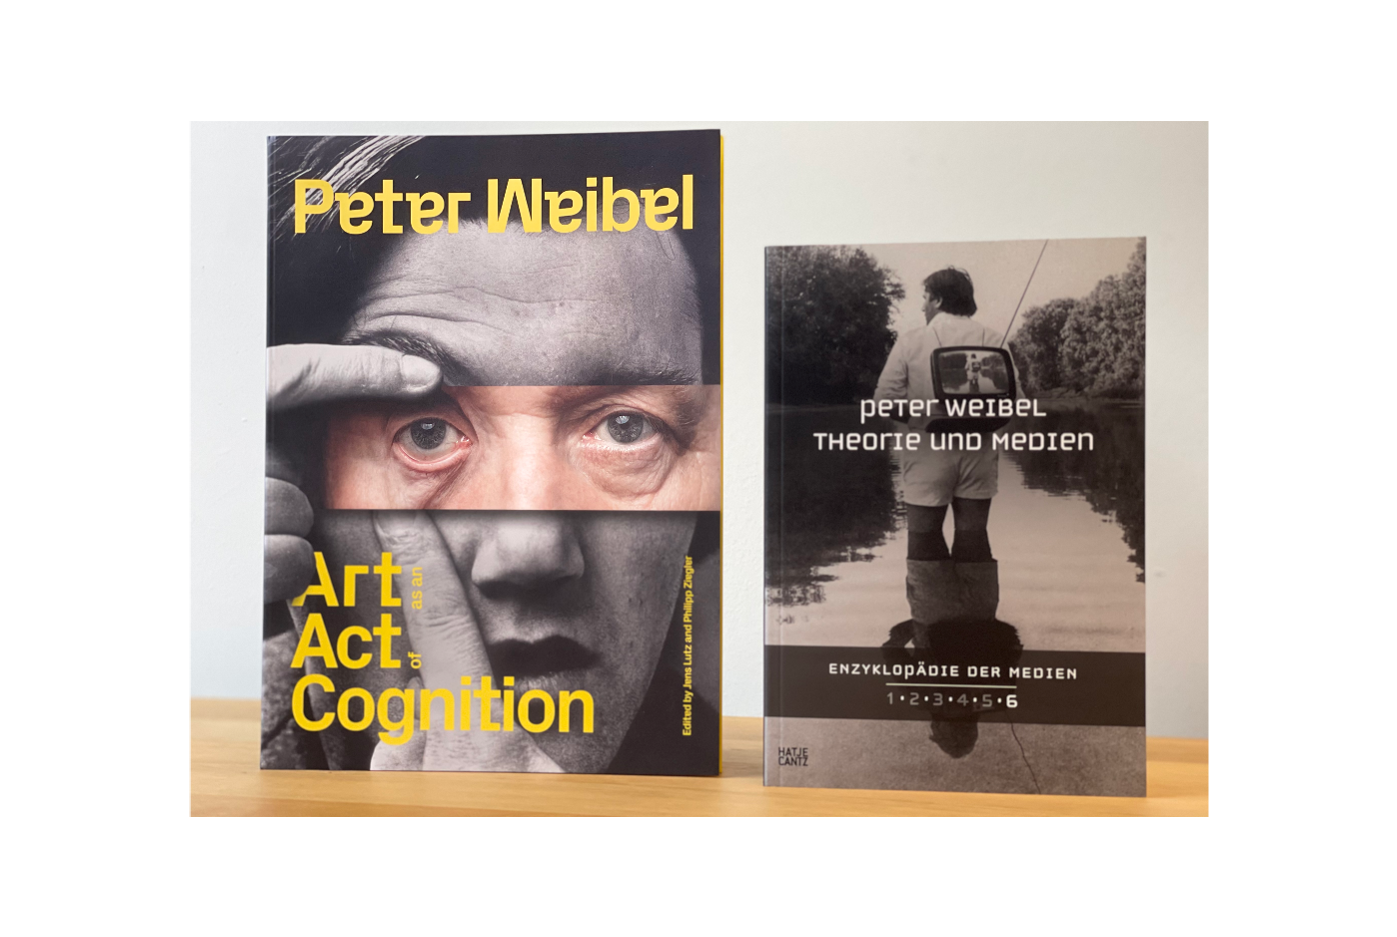 Zwei Publikationen von Peter Weibel